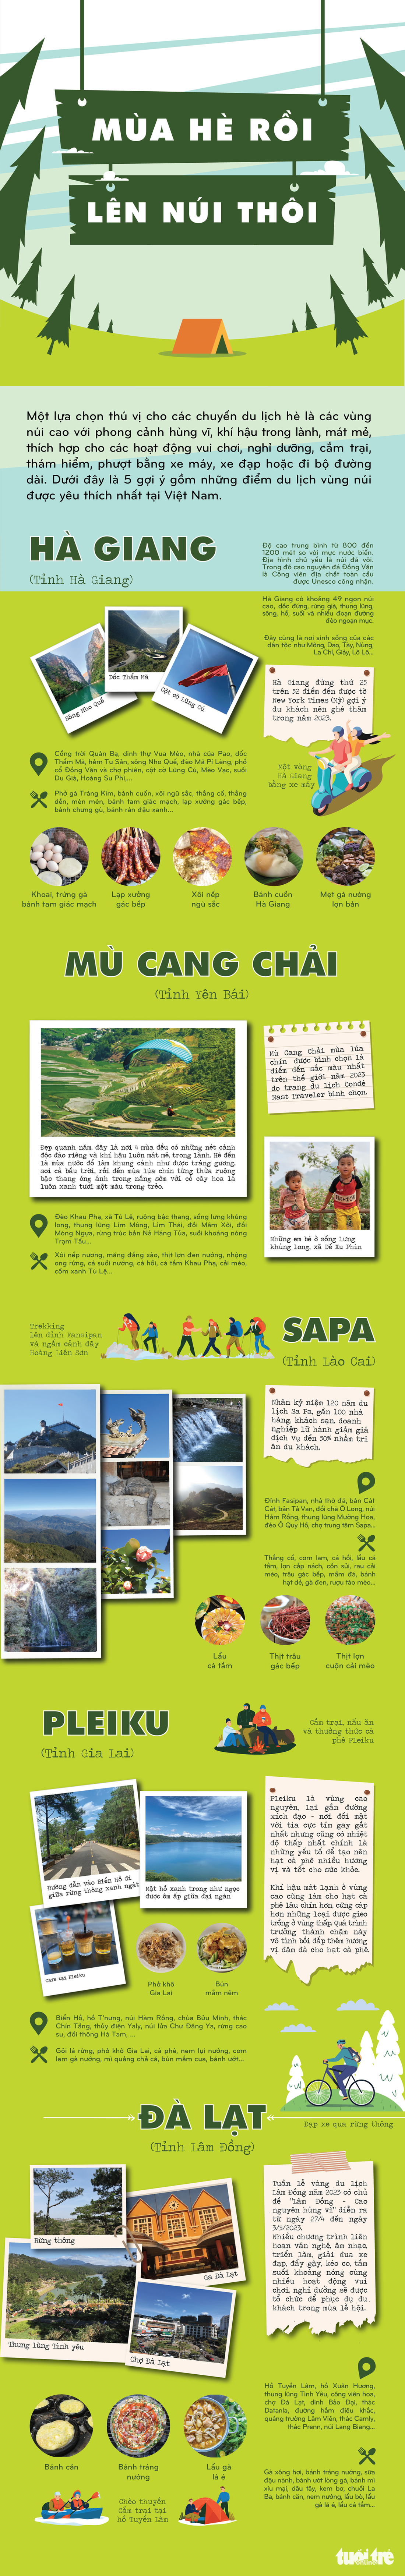 Infographic: 5 điểm du lịch miền núi mát rượi, giải nhiệt mùa hè - Ảnh 1.